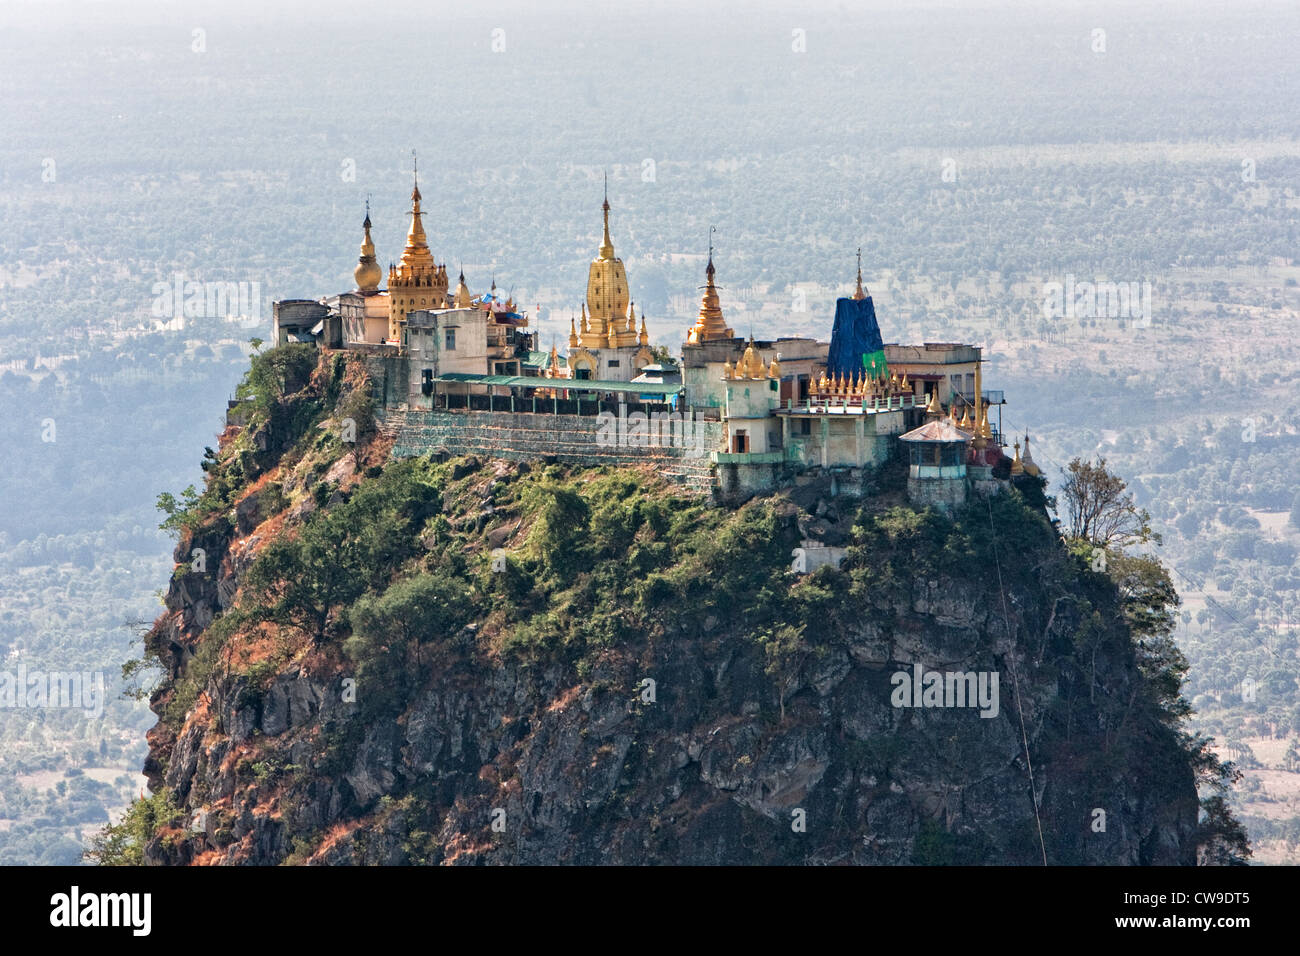 Myanmar, Burma. Mount Popa Monastery. Stock Photo